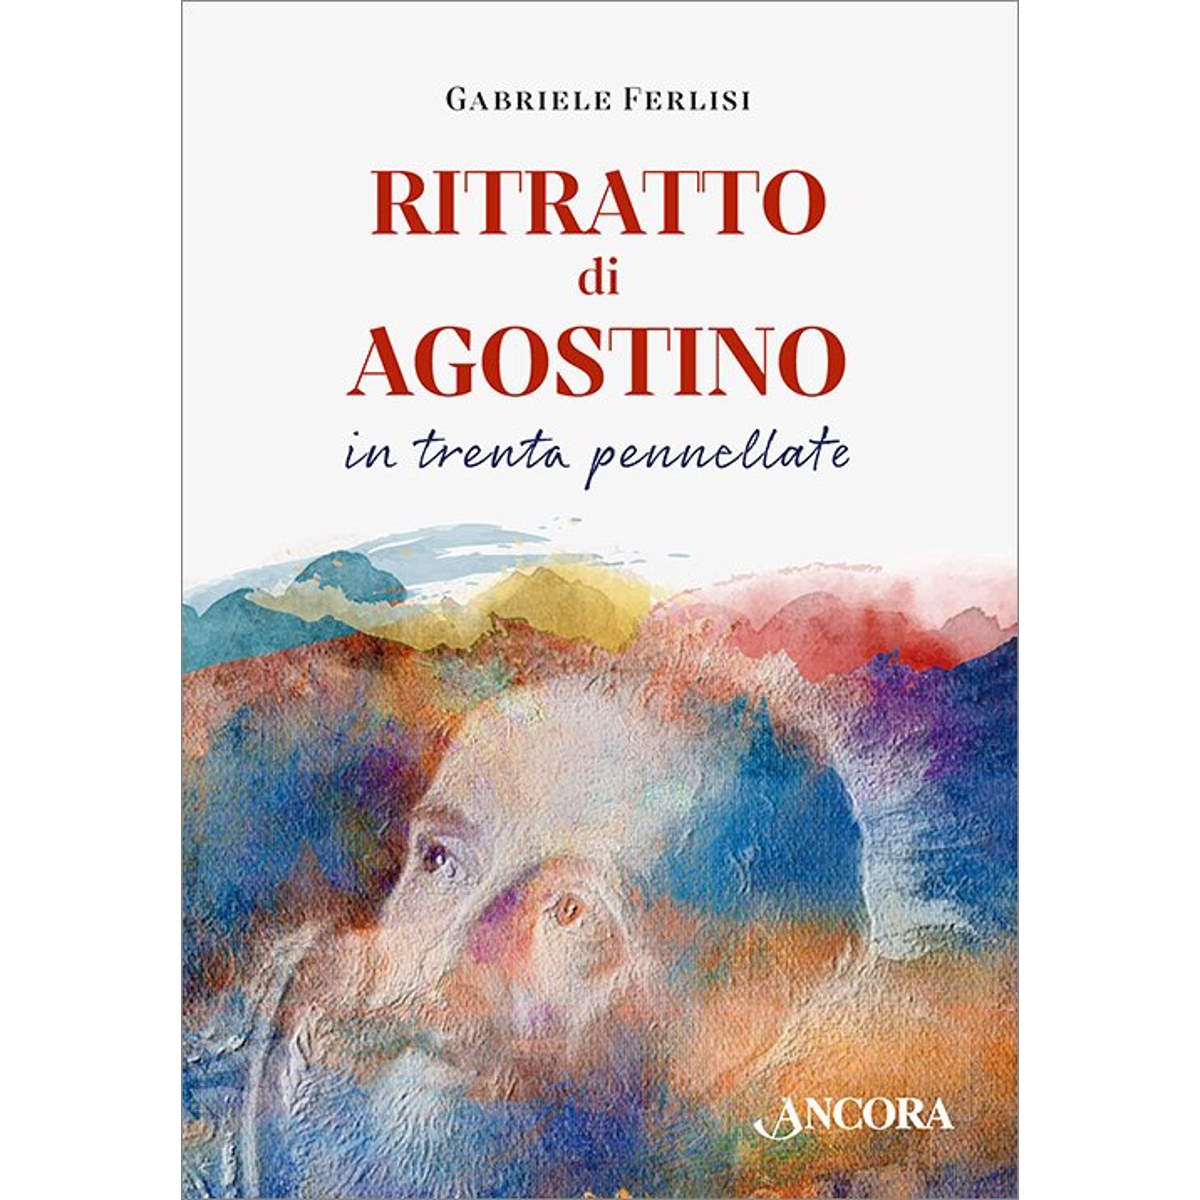 Roma domenica 16 giugno, Si presenta il volume “Ritratto di Agostino in trenta pennellate” di padre Gabriele Ferlisi